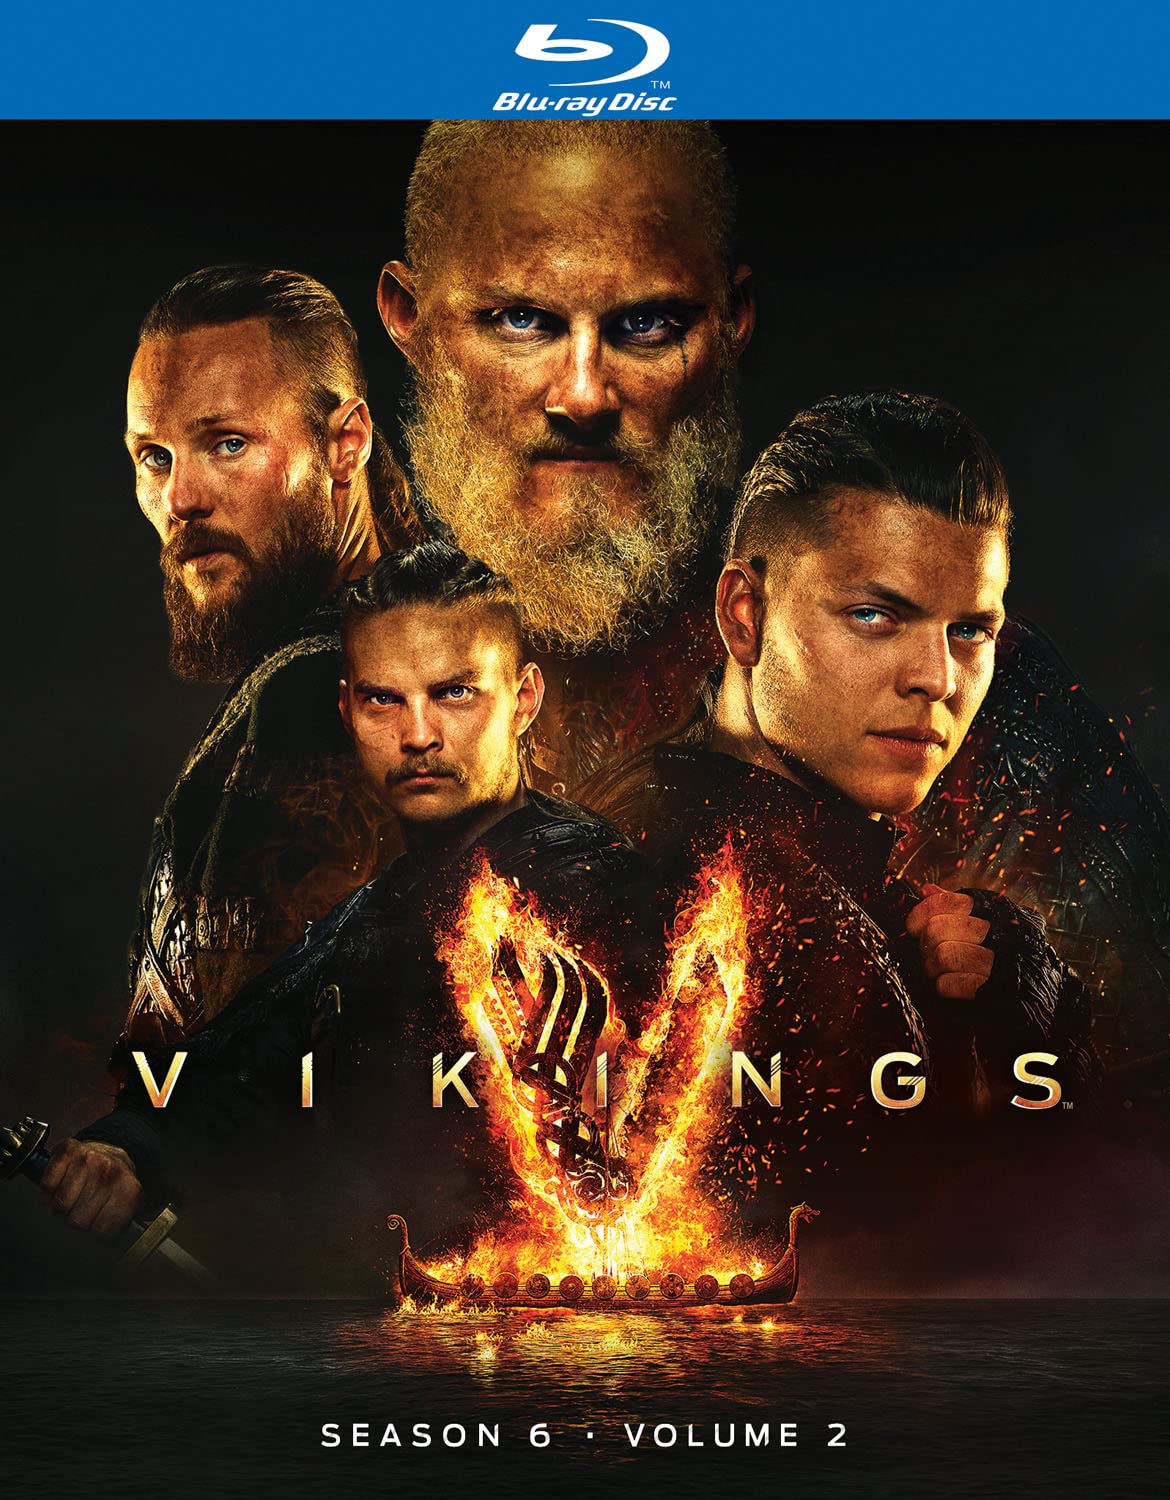 Vikings Season 6- Vol. 2 Blu-ray